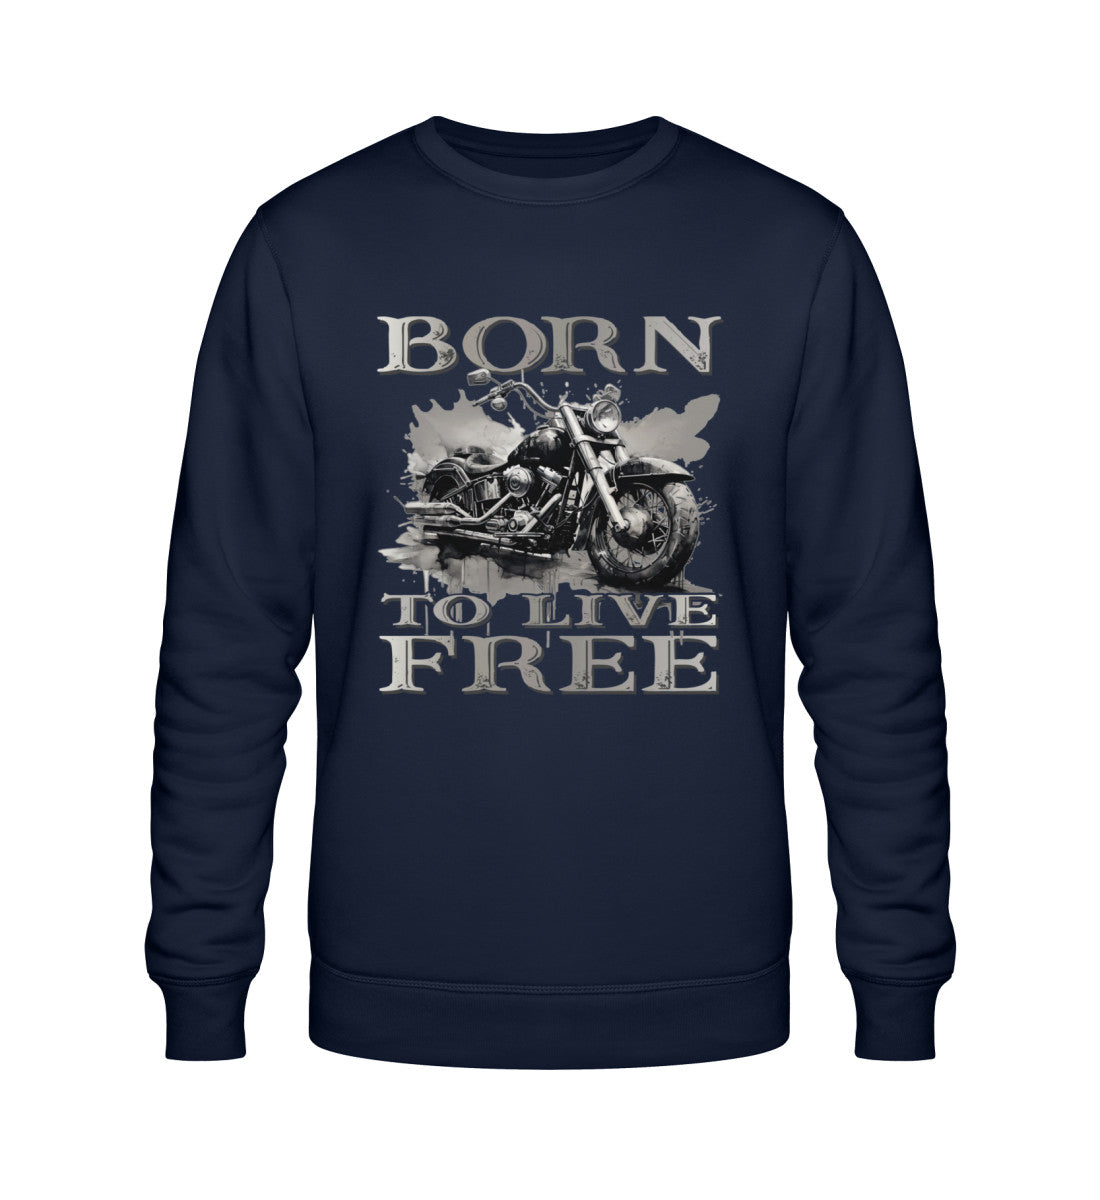 Ein Biker Sweatshirt für Motorradfahrer von Wingbikers mit dem Aufdruck,  Born to Live Free, in navy blau.  